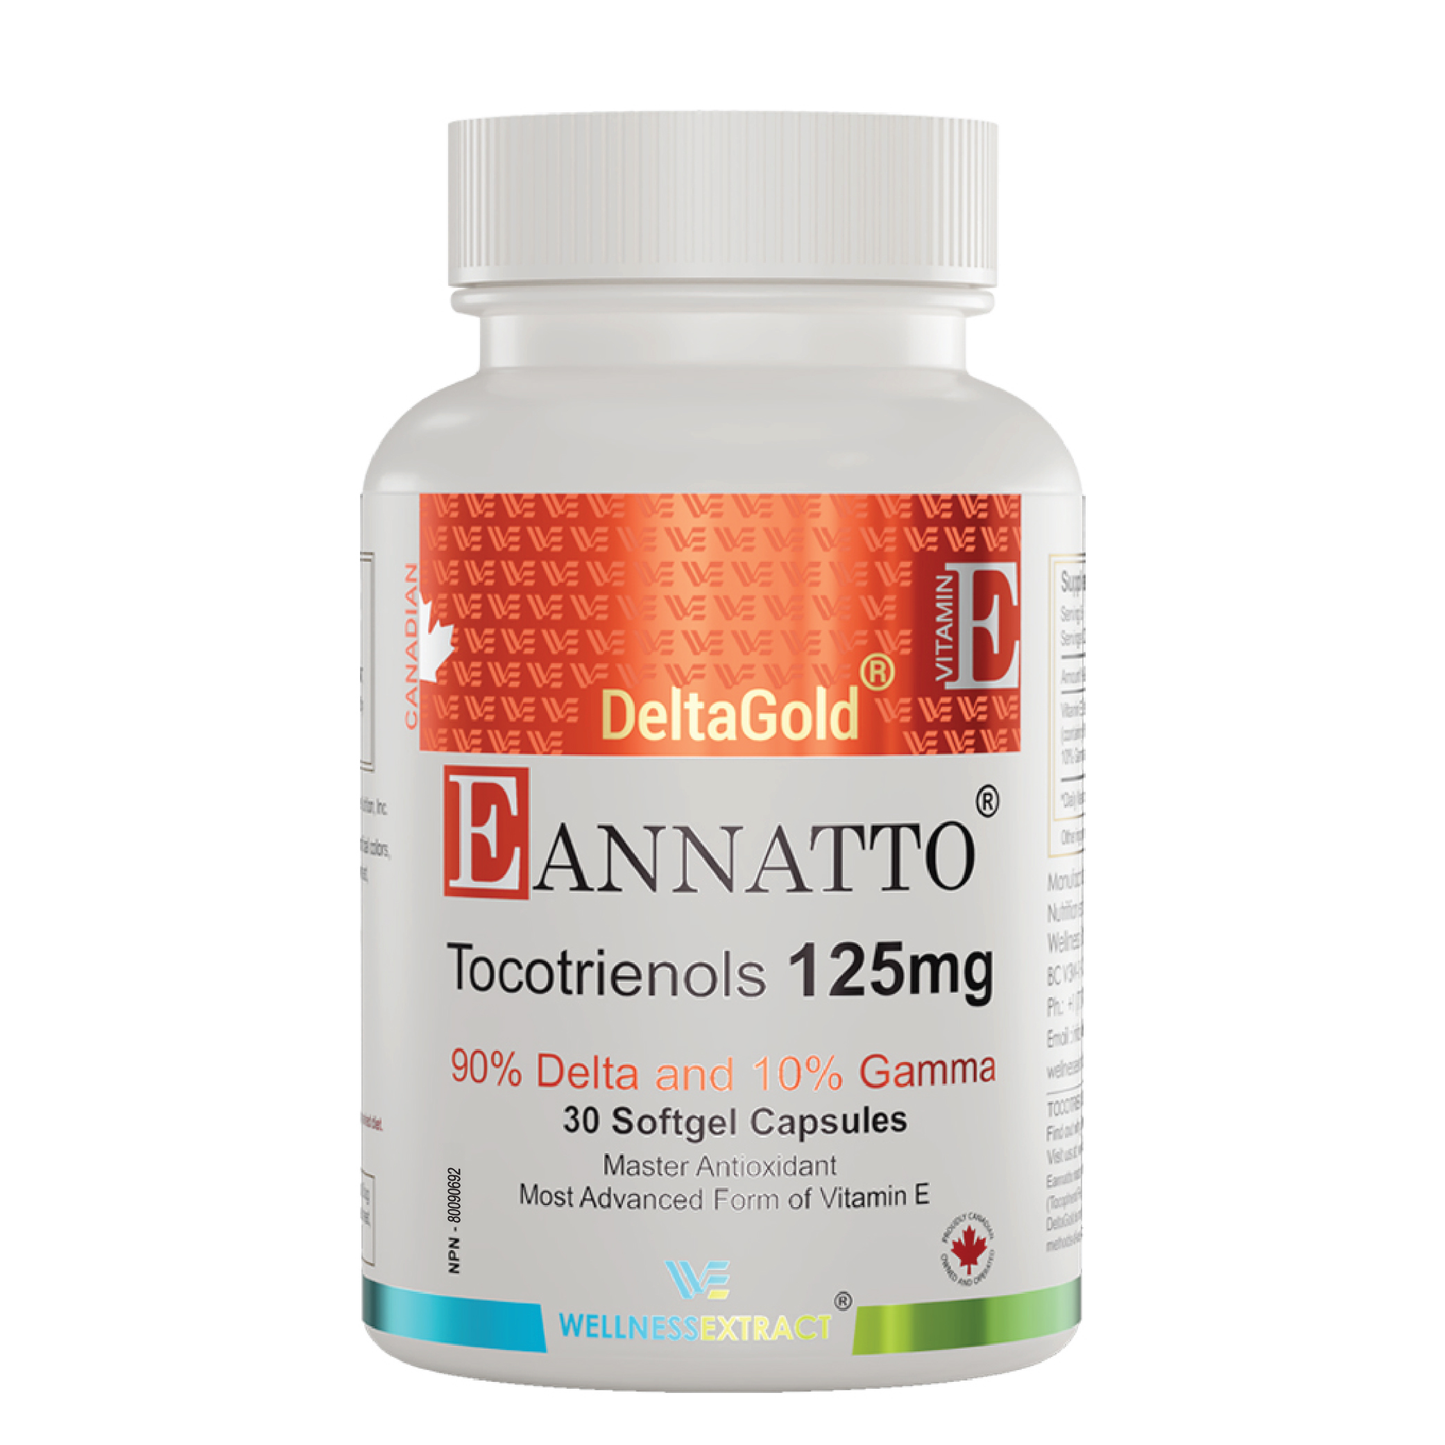 Vitamin E - Eannatto DeltaGold Tocotrienols